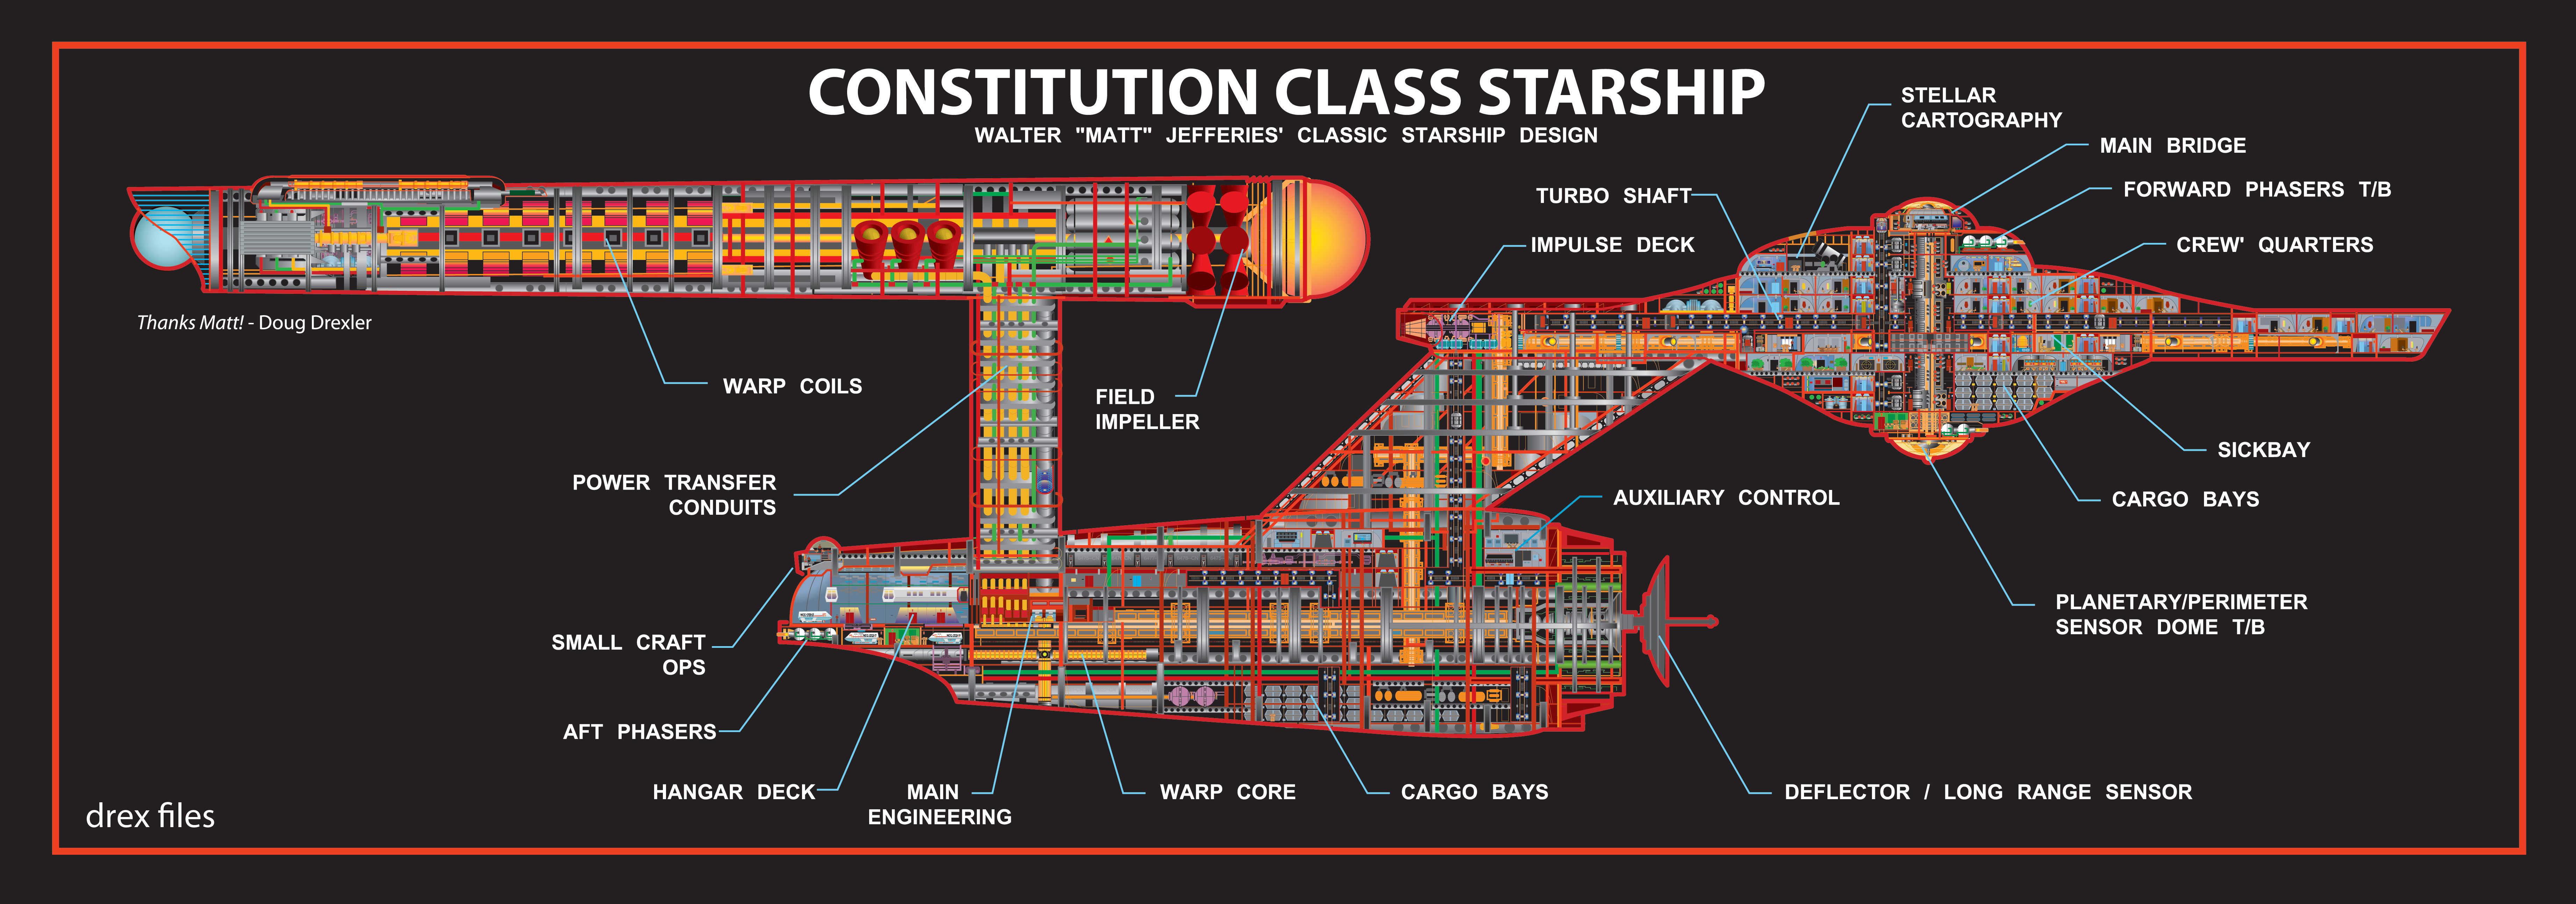 звездный путь, космические корабли, схема, транспортные средства, Star Trek схемы, конституция, класс - обои на рабочий стол